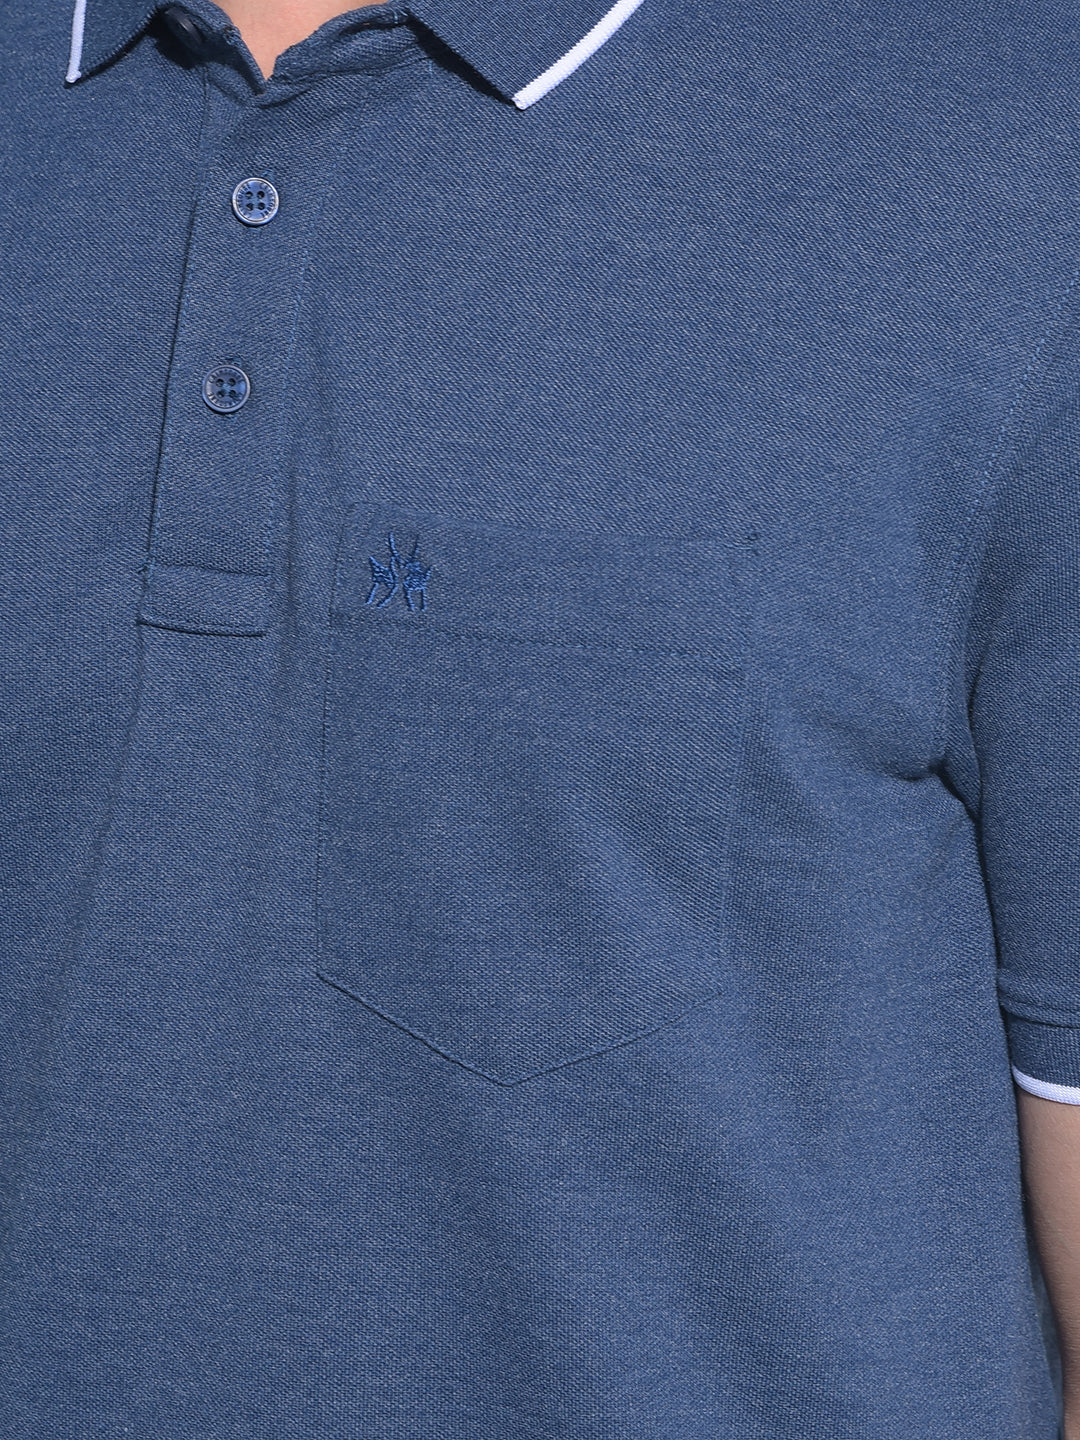 Blue Cotton T-Shirt-Men T-Shirts-Crimsoune Club